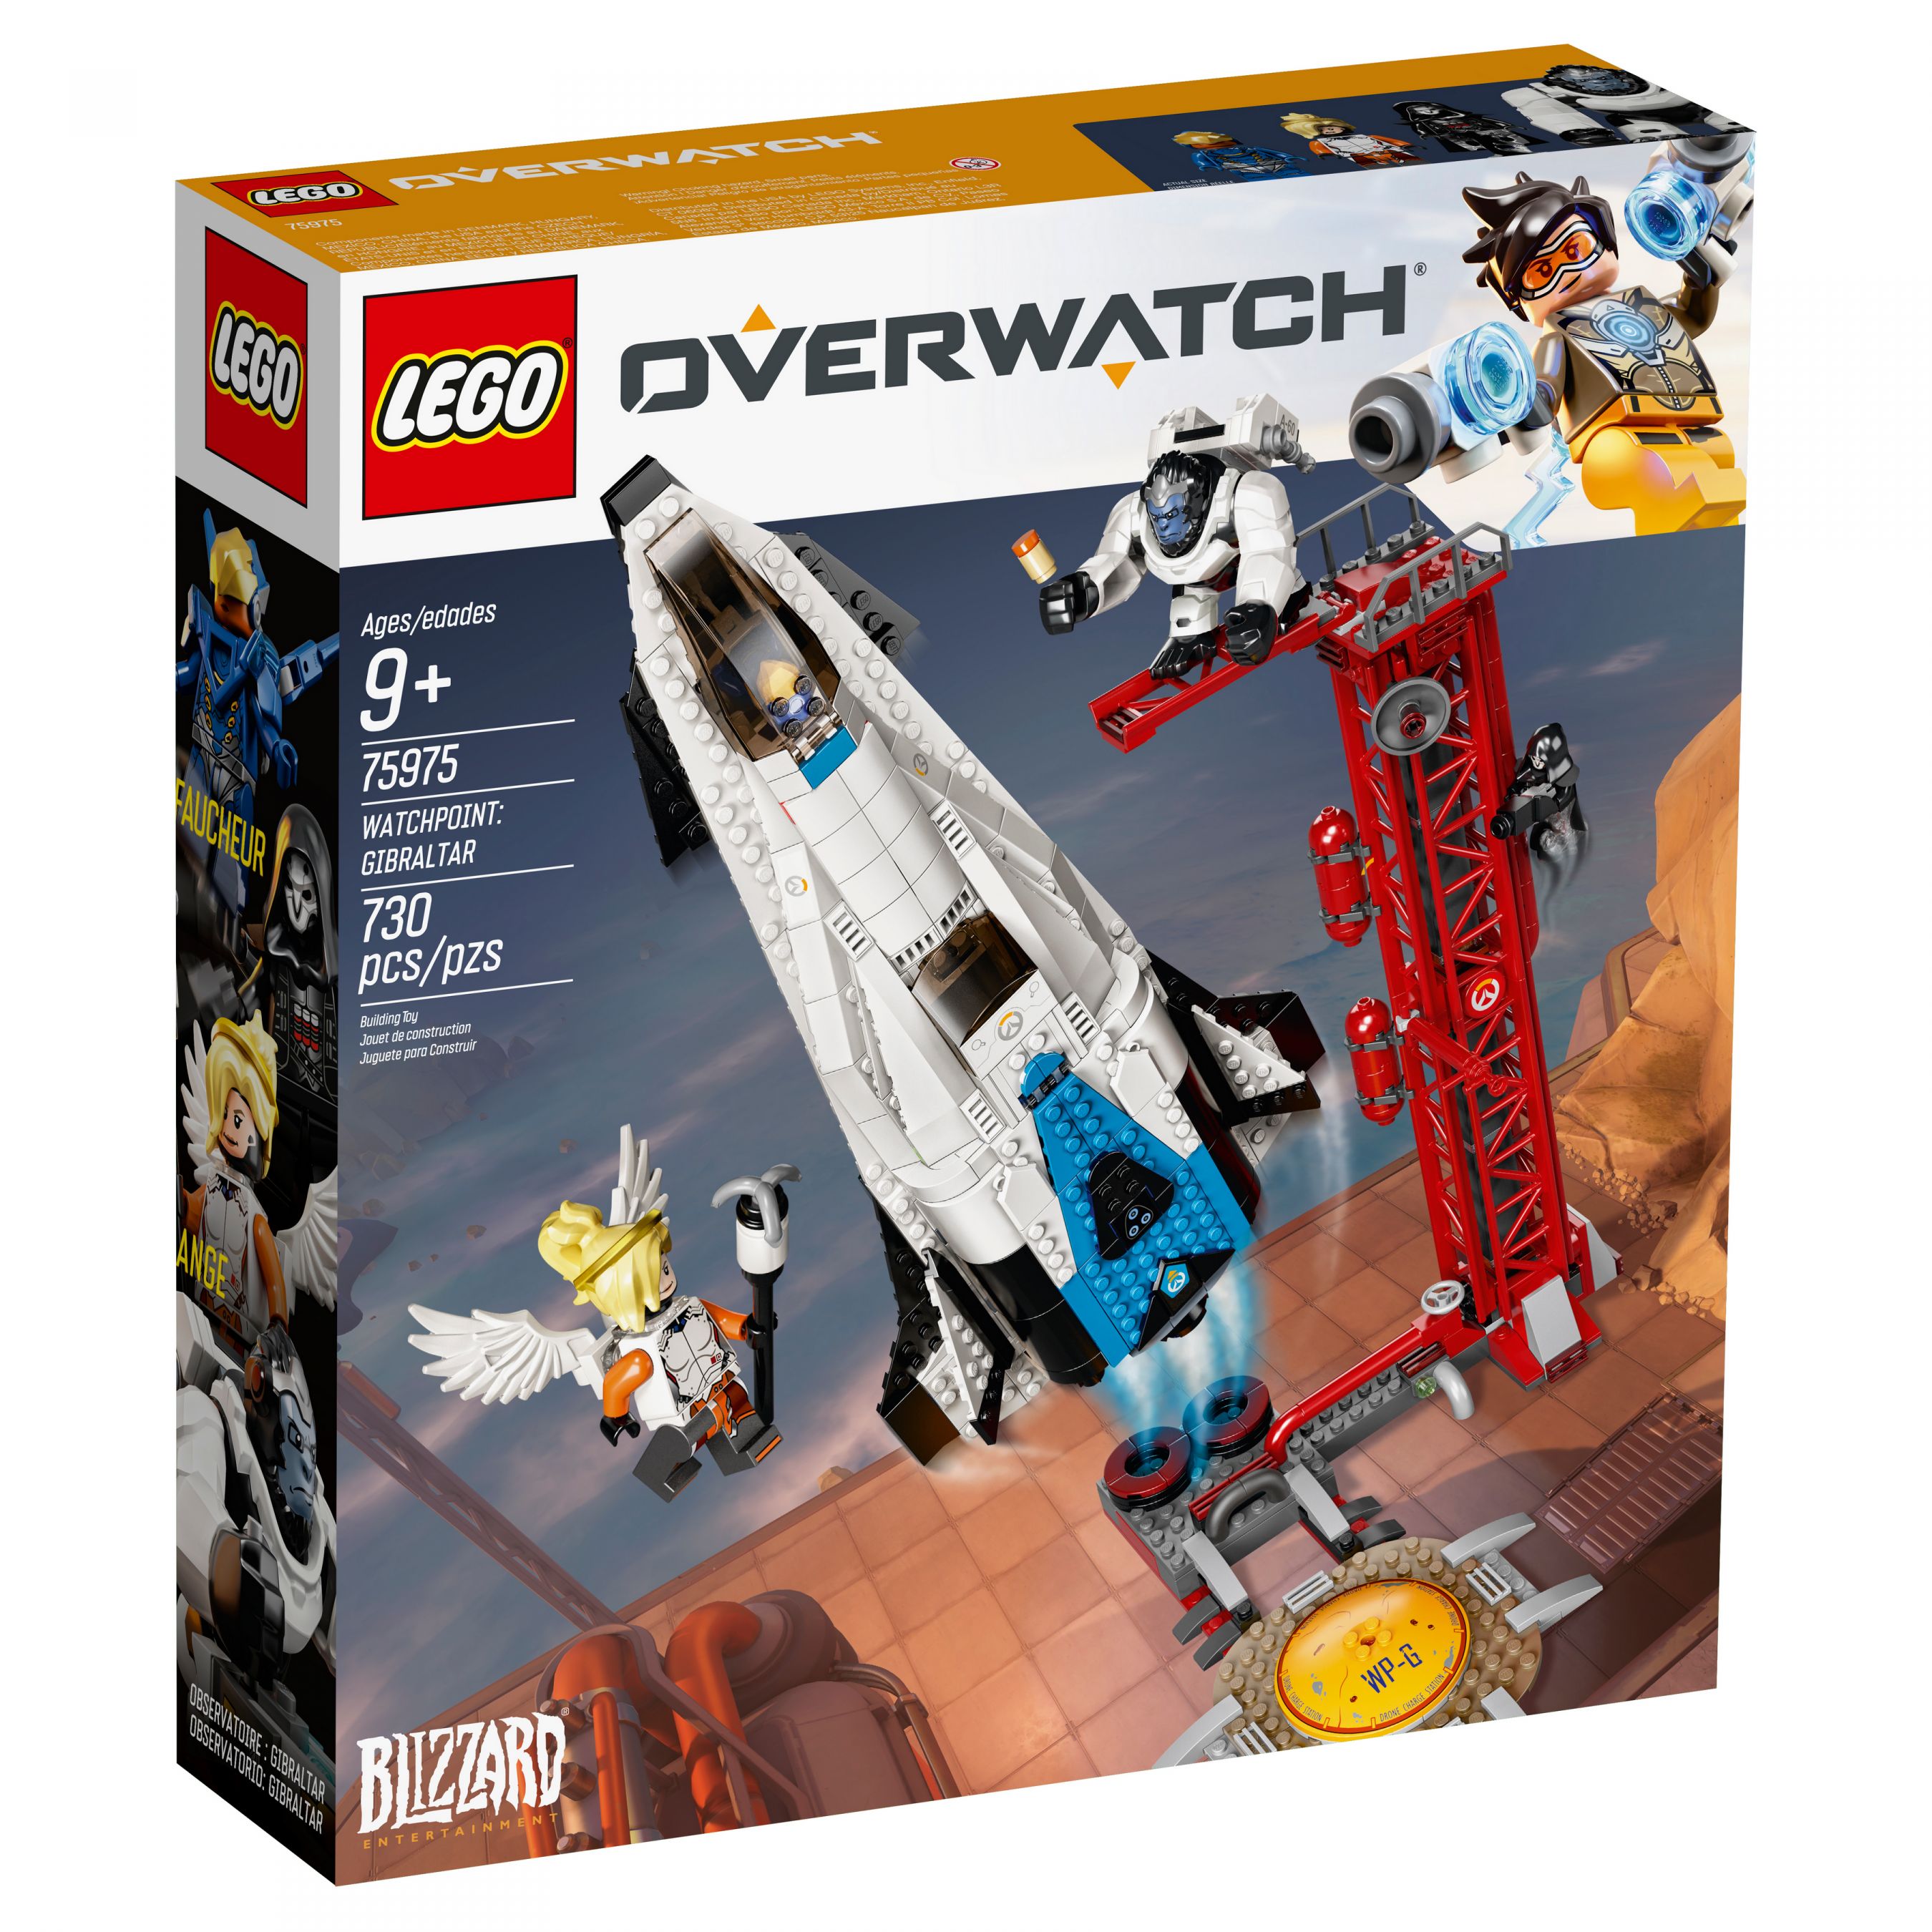 LEGO Overwatch 75975 Watchpoint: Gibraltar LEGO_75975_alt1.jpg